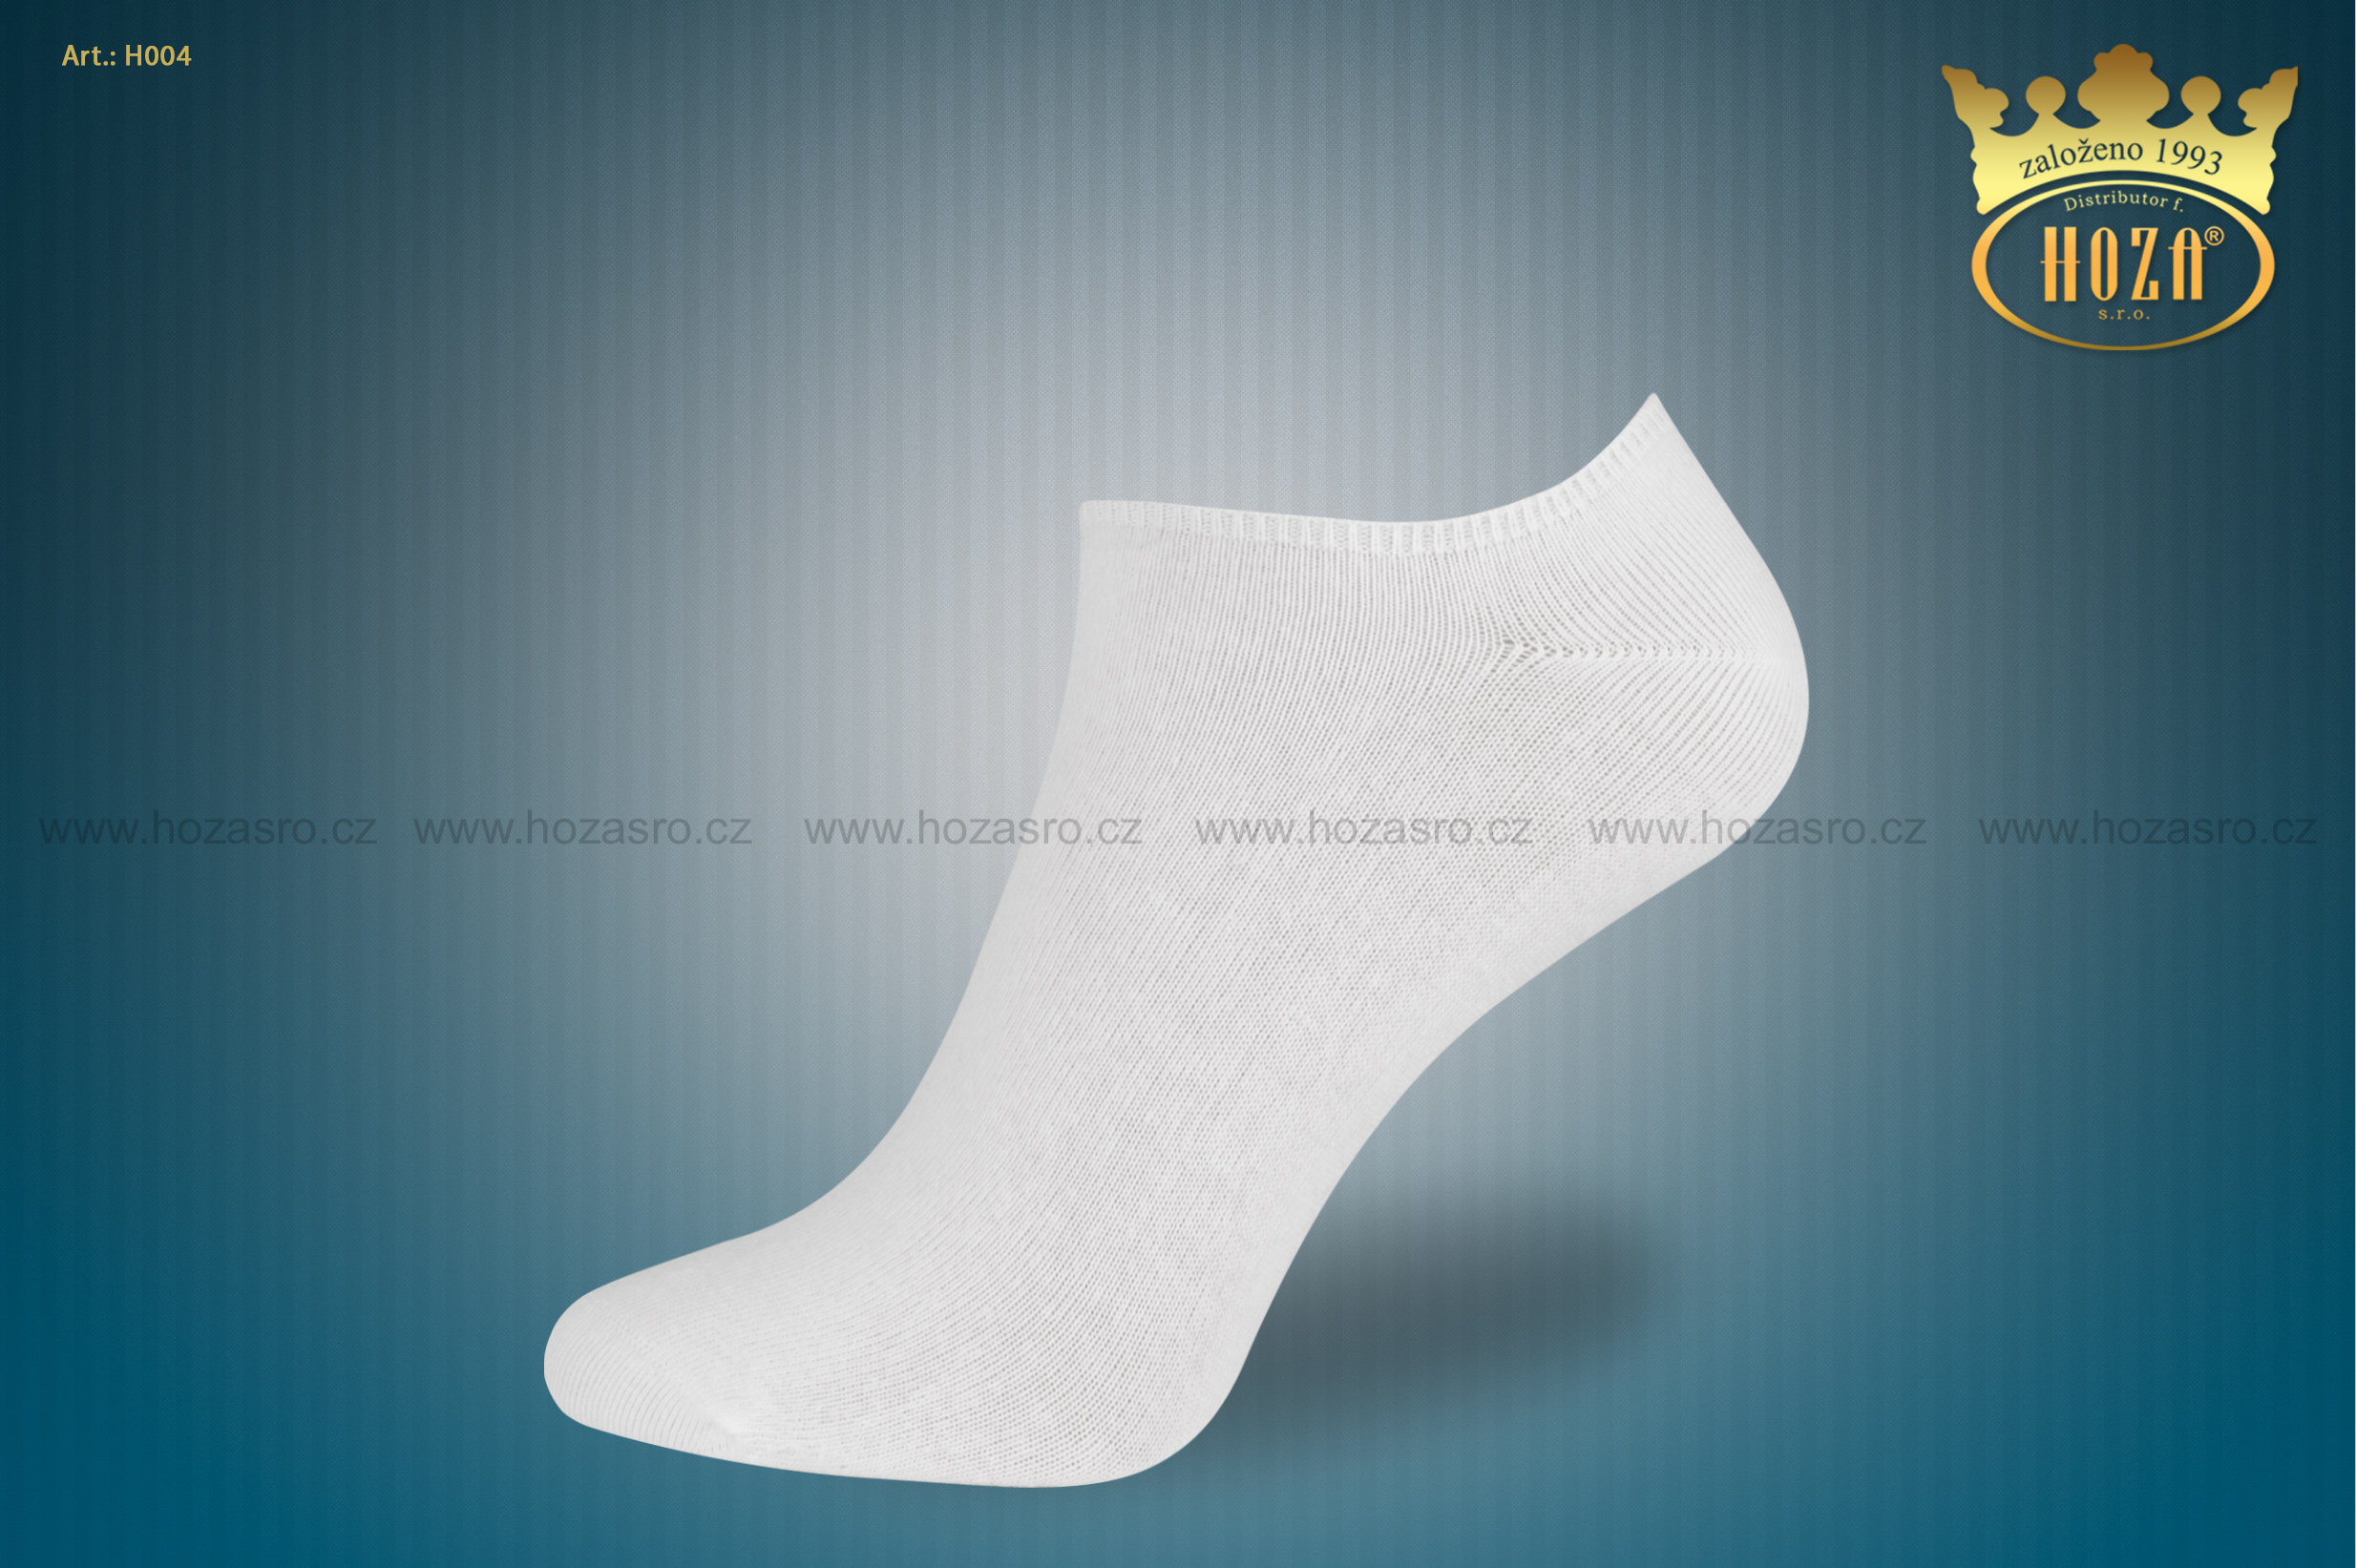 Dámské kotníkové ponožky HOZA s elastanem - bílé - H004-C